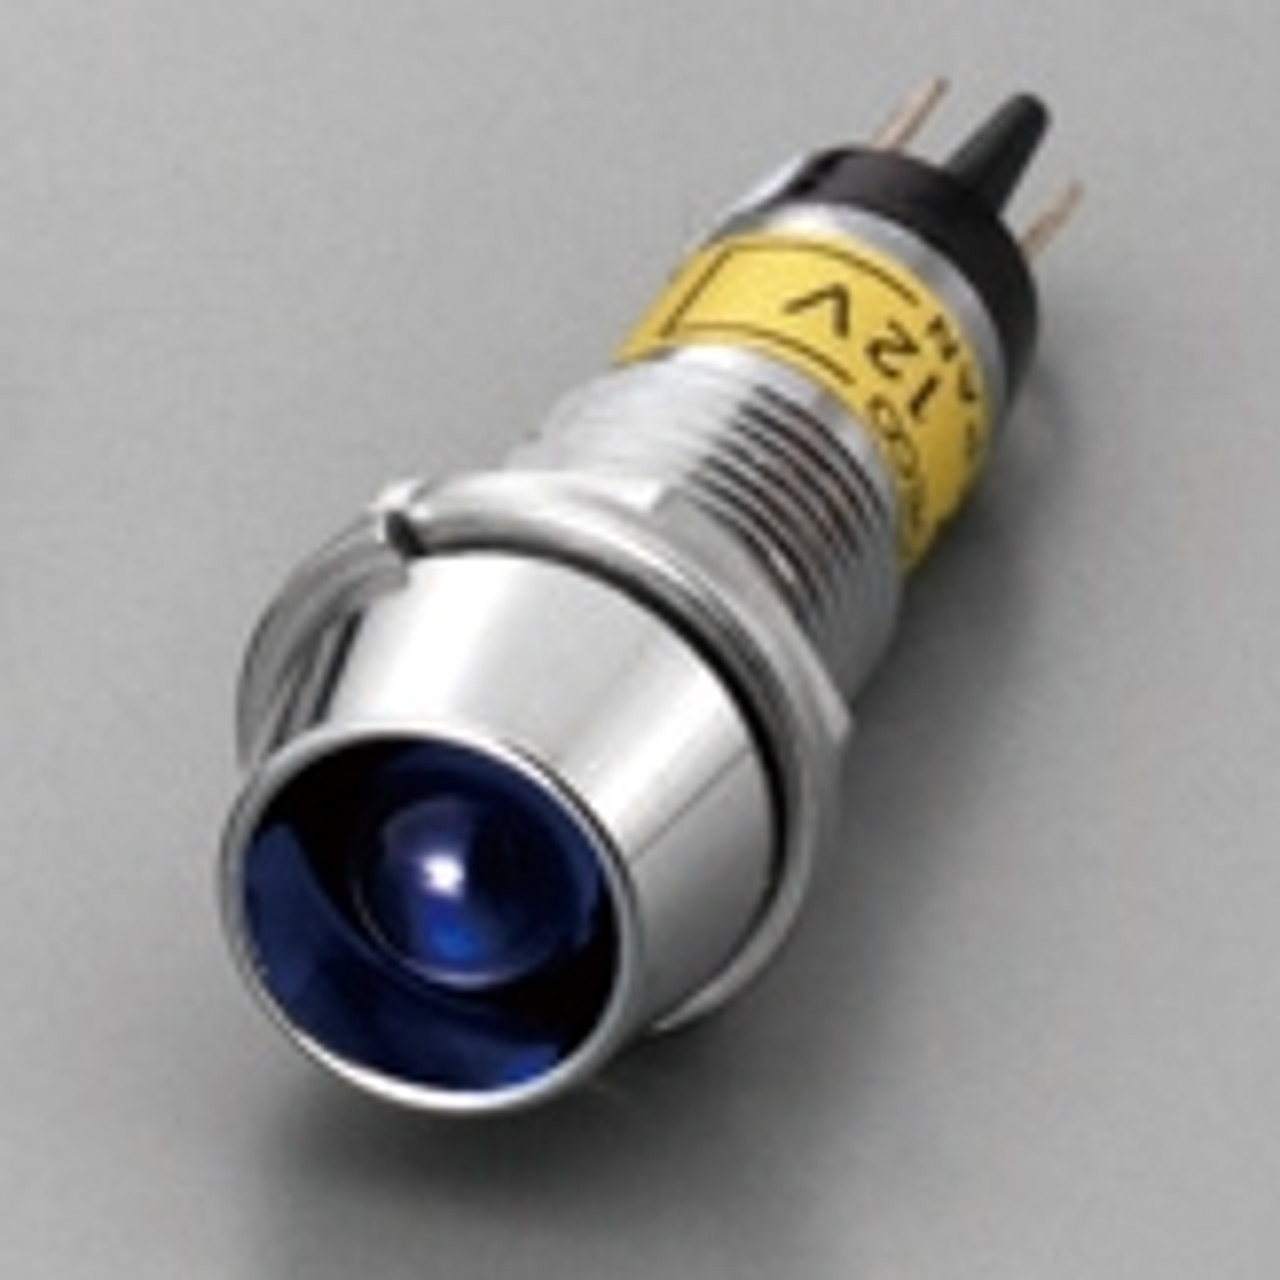 Repair Indicator Lamp, Blue, for DC12V